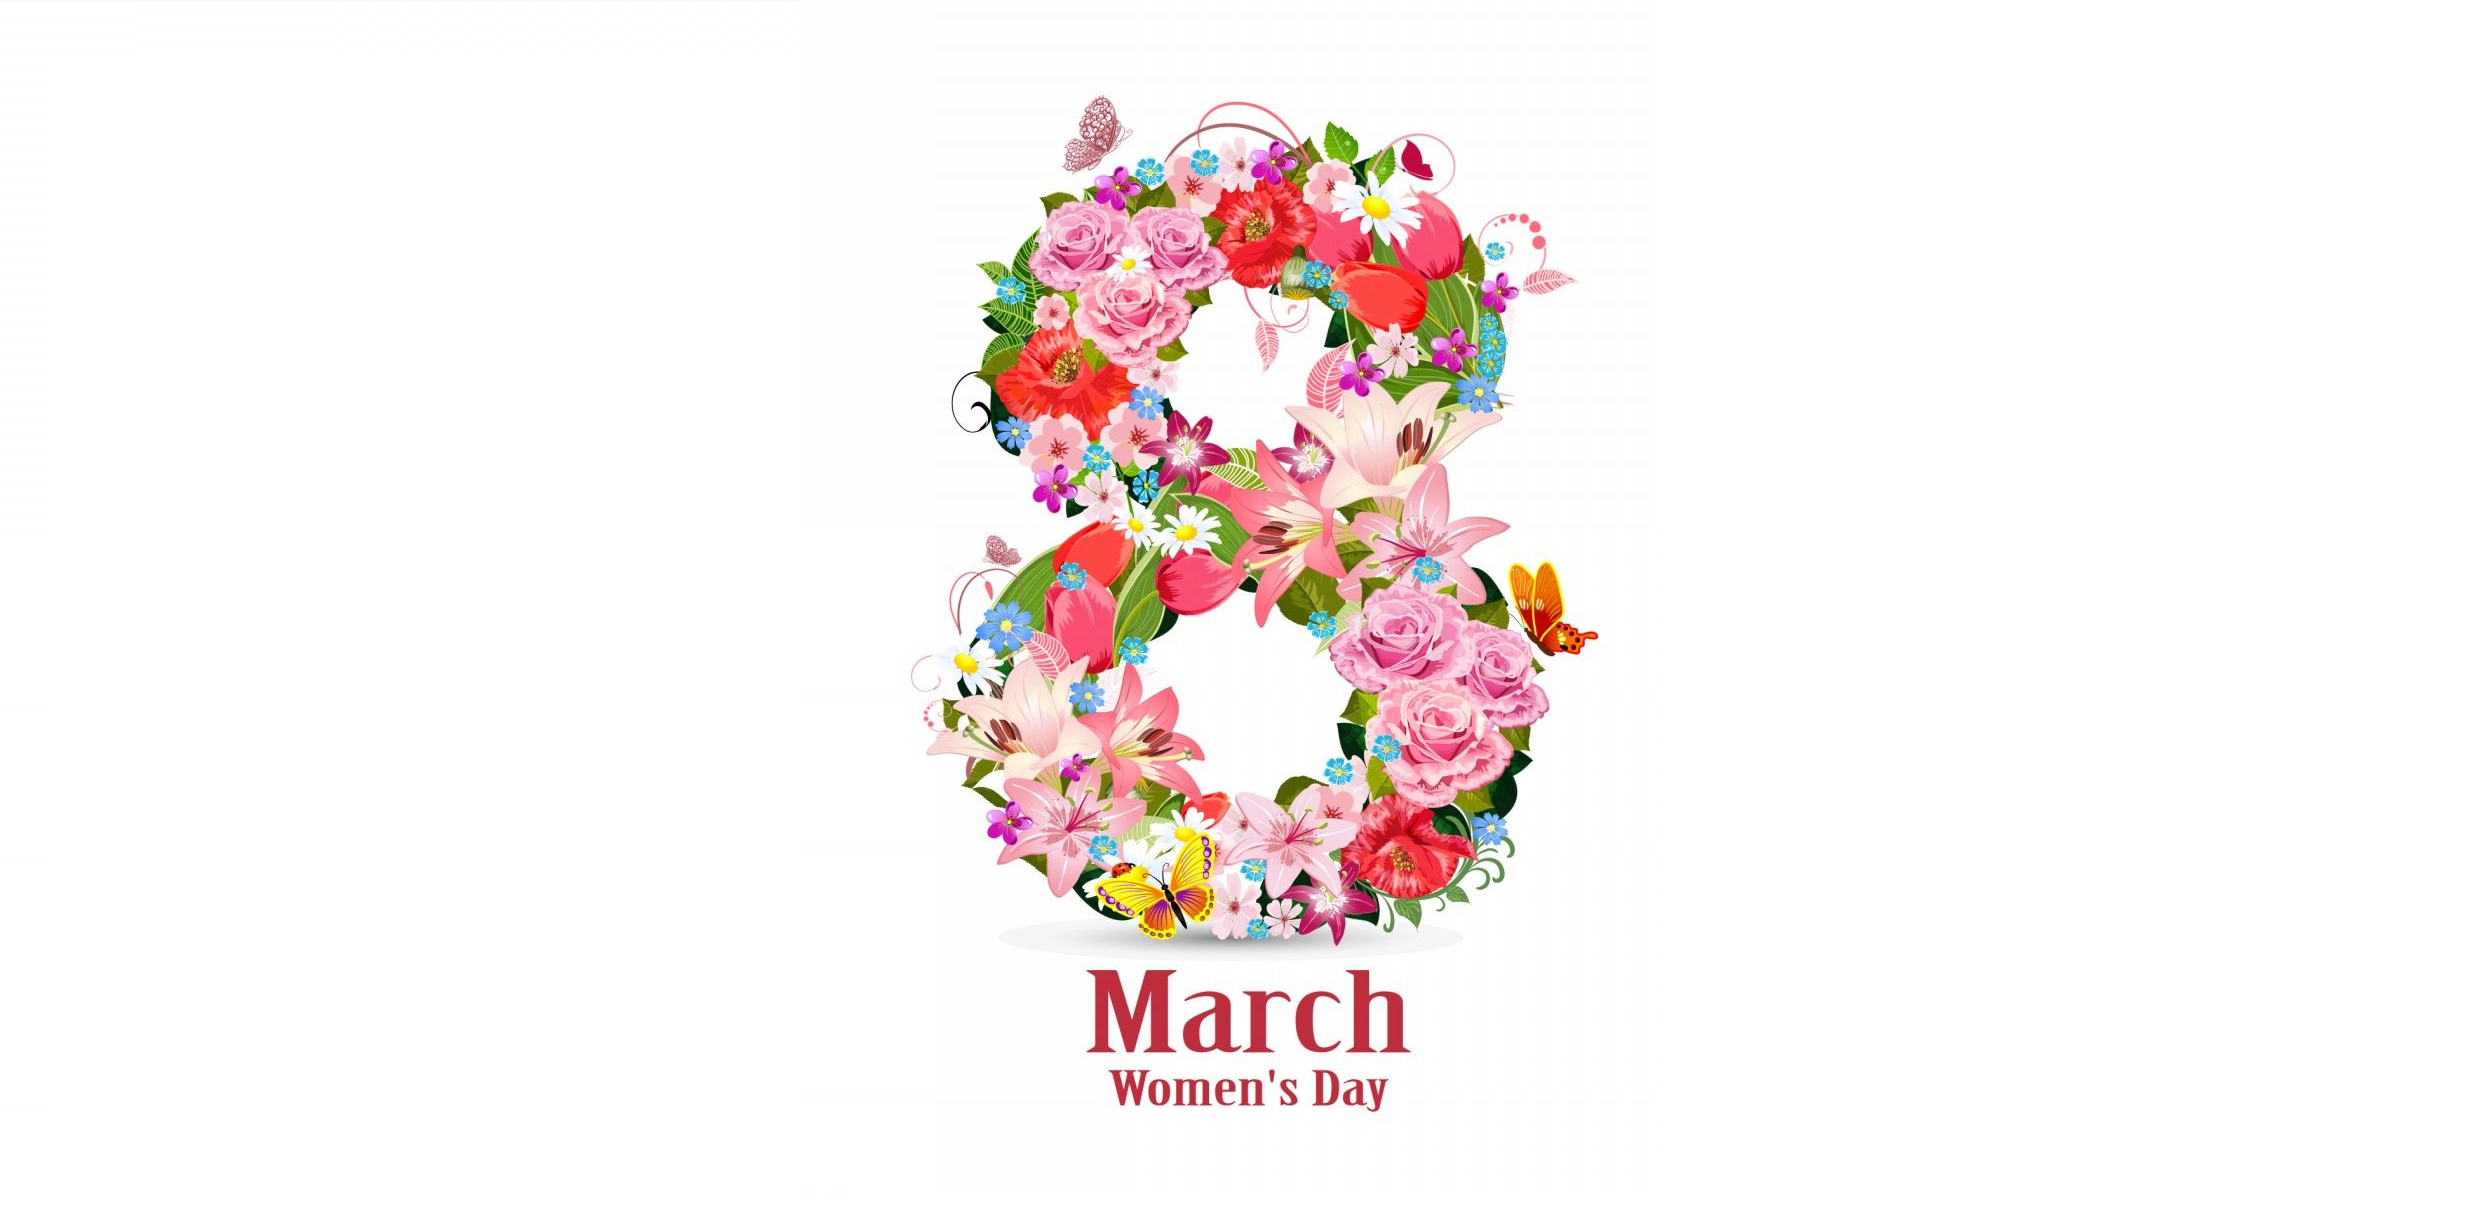 თჰუ-ს ადმინისტრაცია გილოცავთ ქალთა საერთაშორისო დღეს 8 მარტს,  გამოცხადებულია - უქმე დღედ!